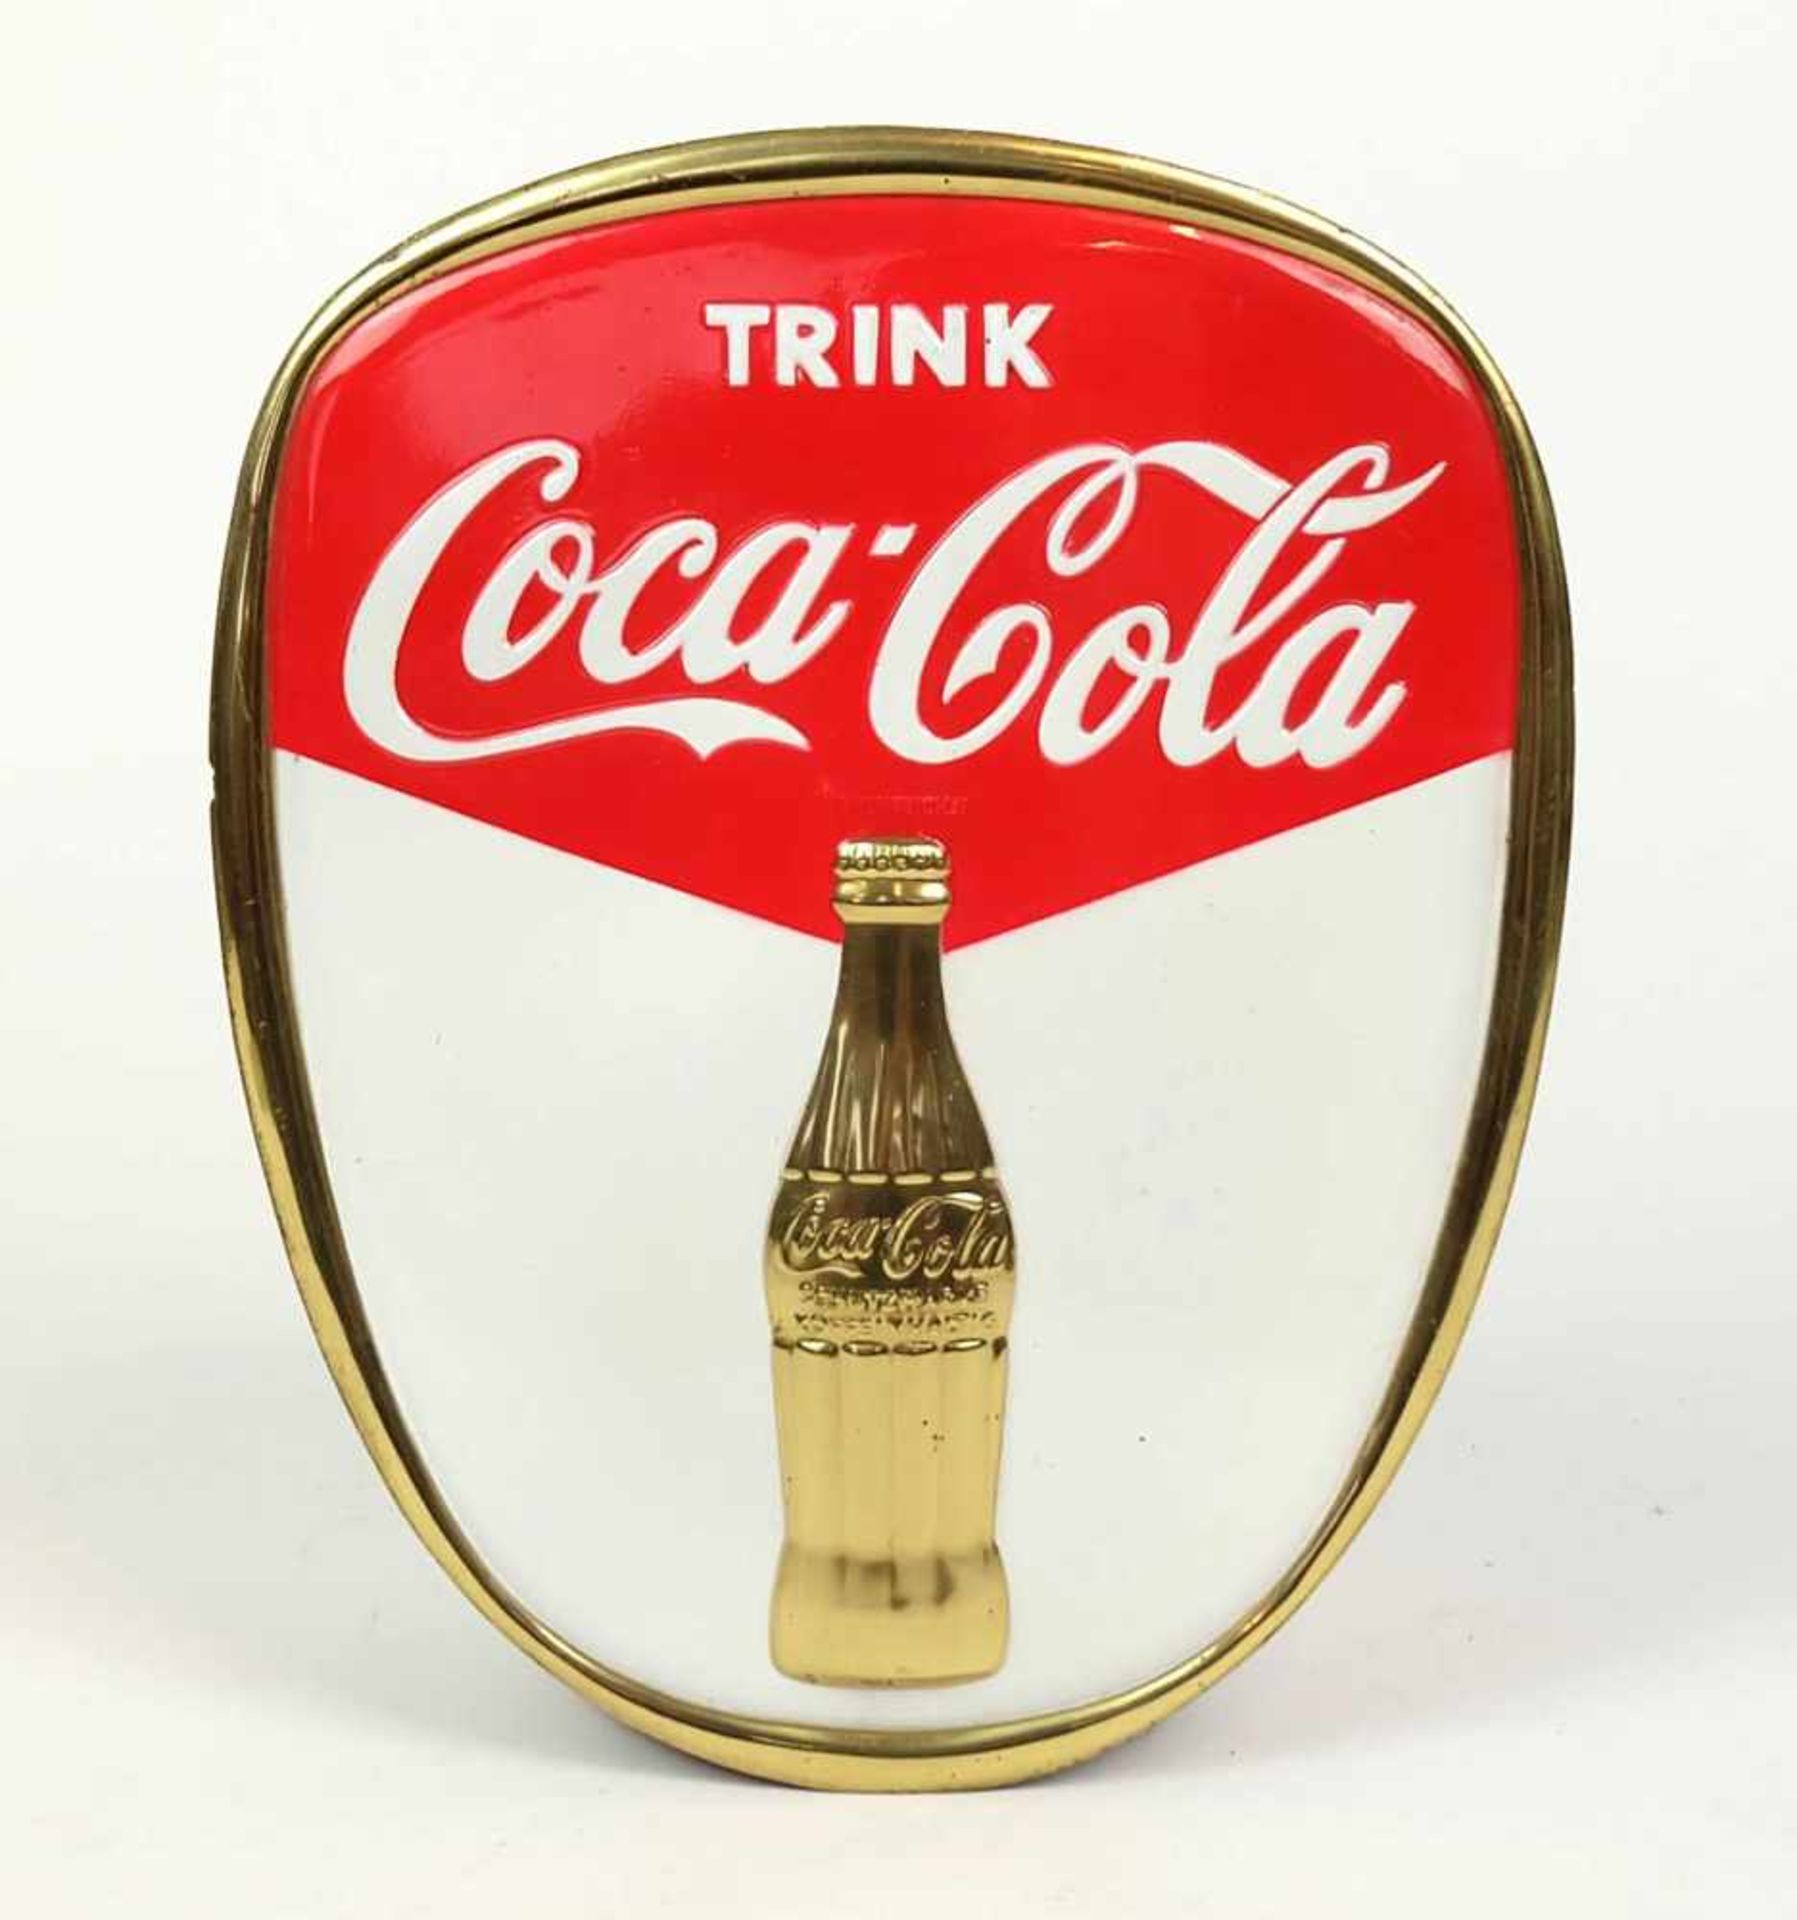 BLECHSCHILD, 1950er Jahre, Nierenstil Epoche, "Trink Coca Cola", geprägtes Blech in drei Farben,